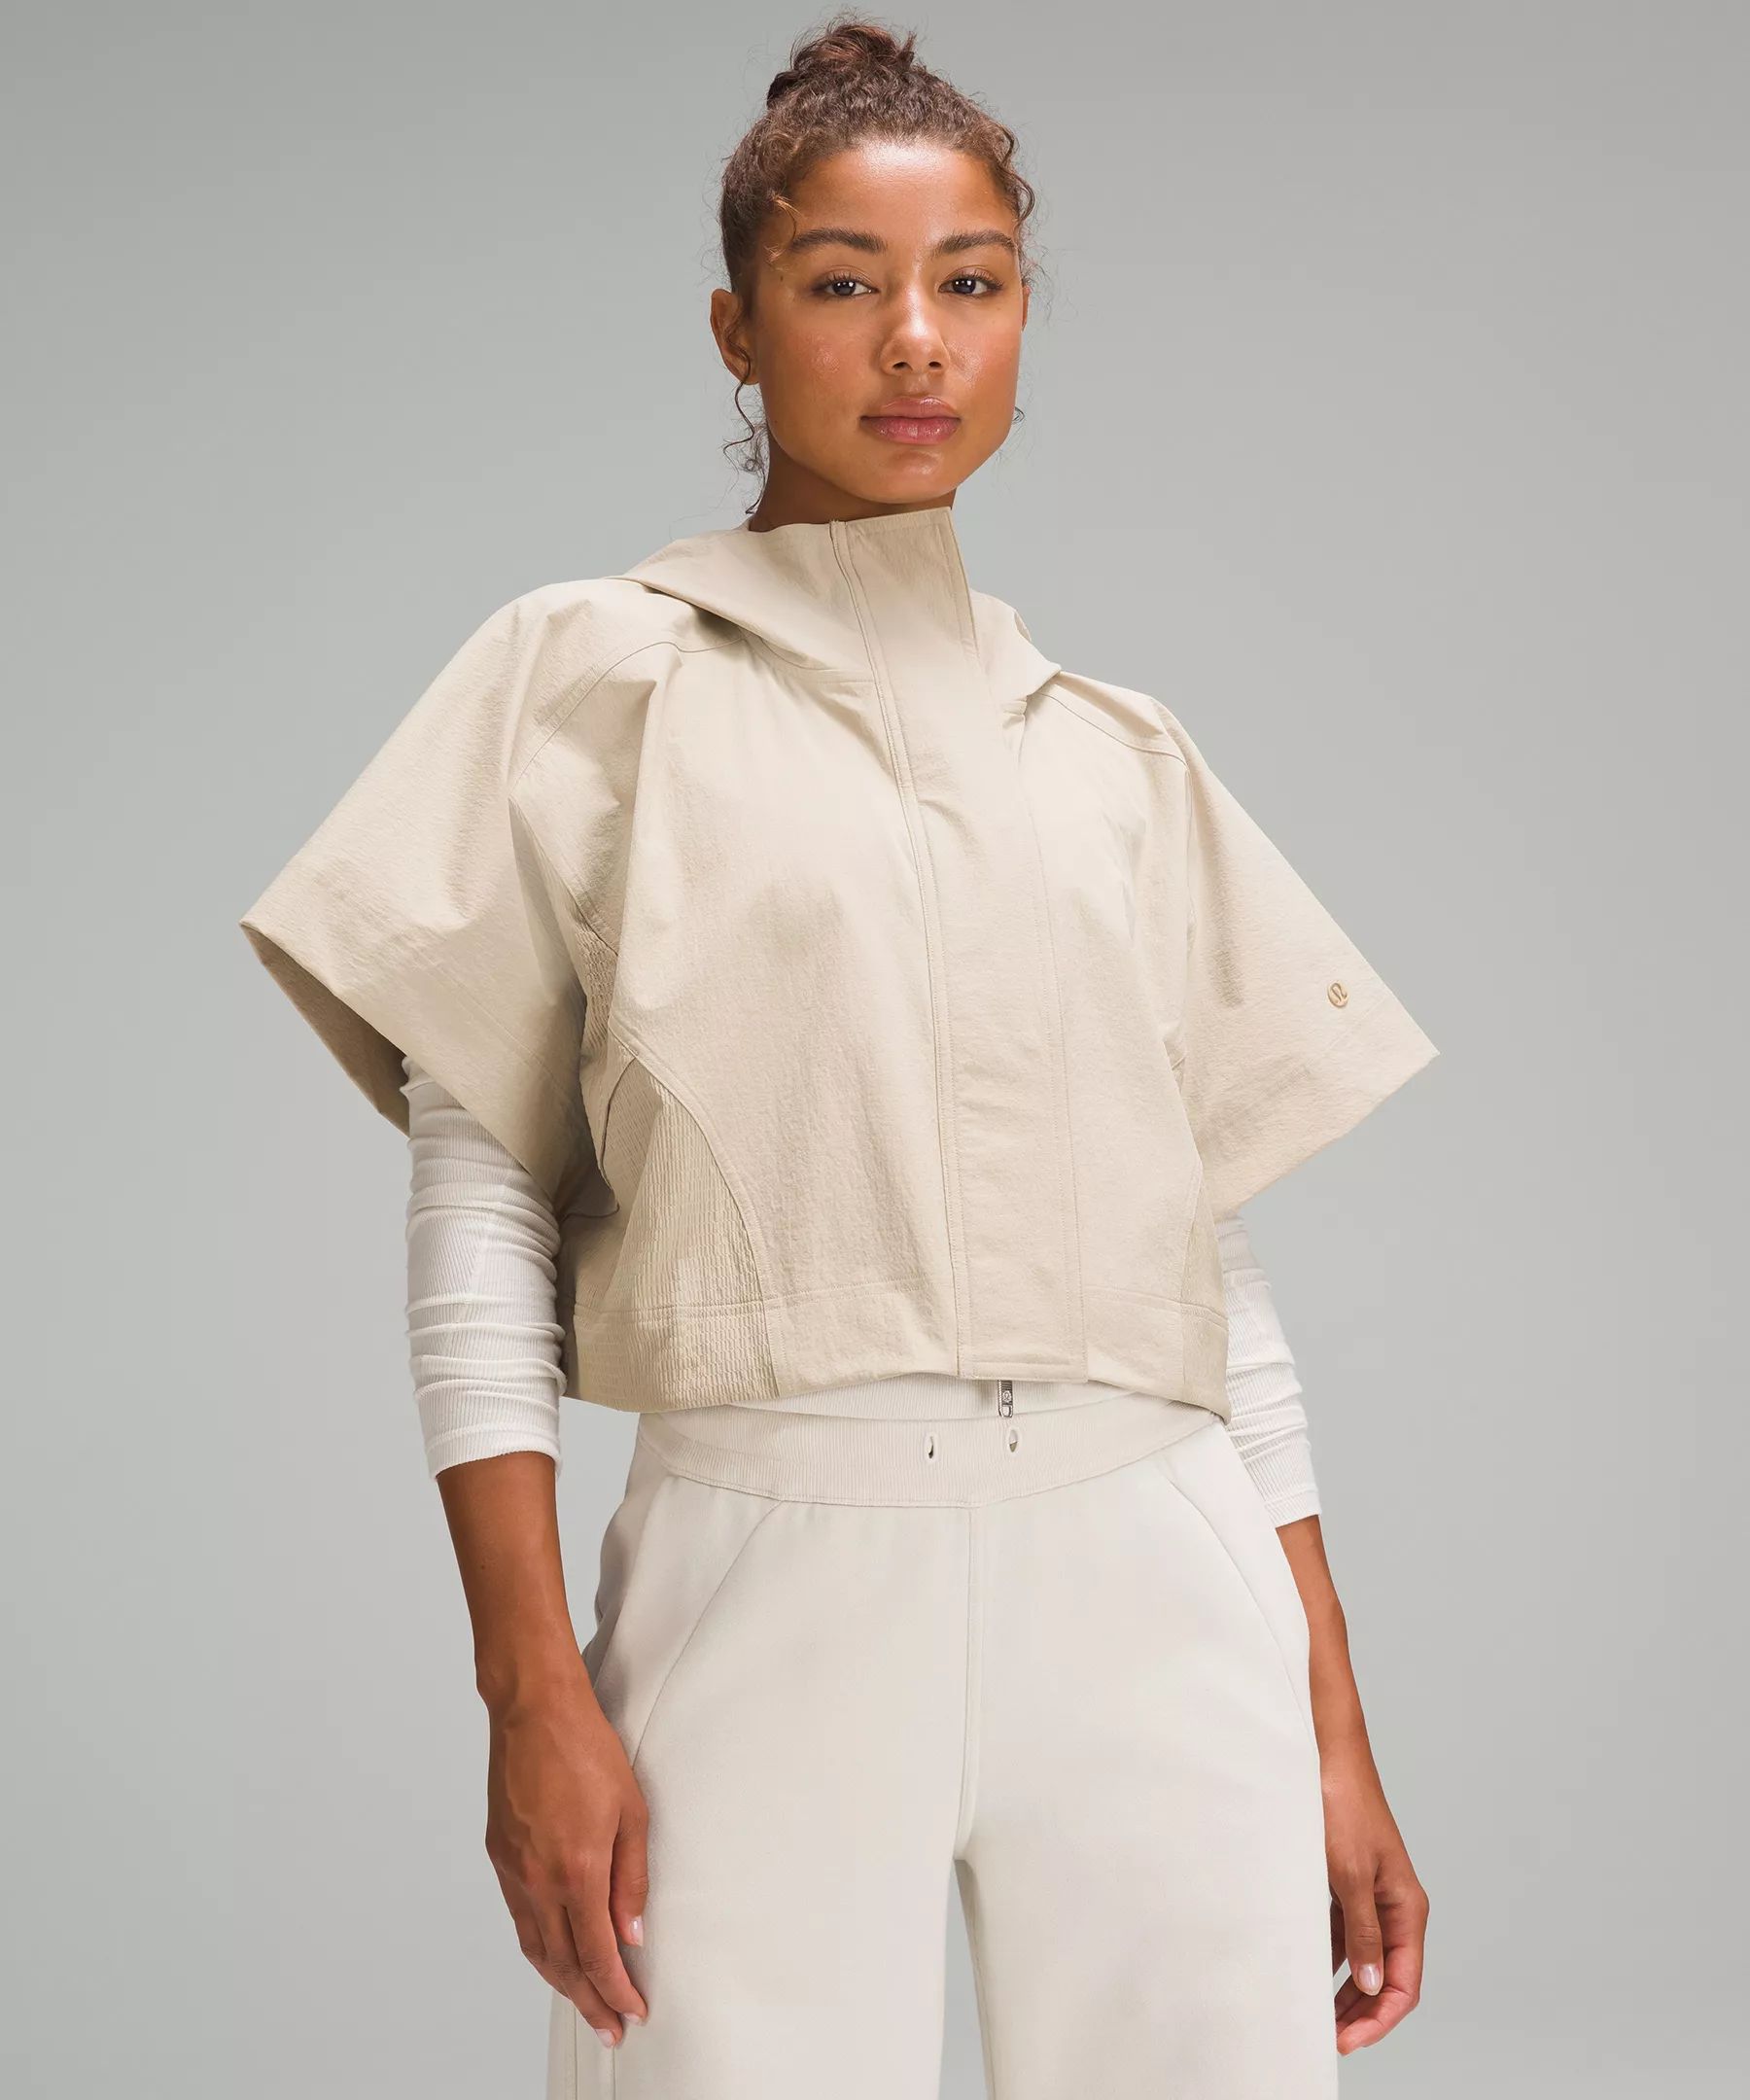 Mixed Woven Short-Sleeve Jacket | Women's Hoodies & Sweatshirts | lululemon | Lululemon (US)